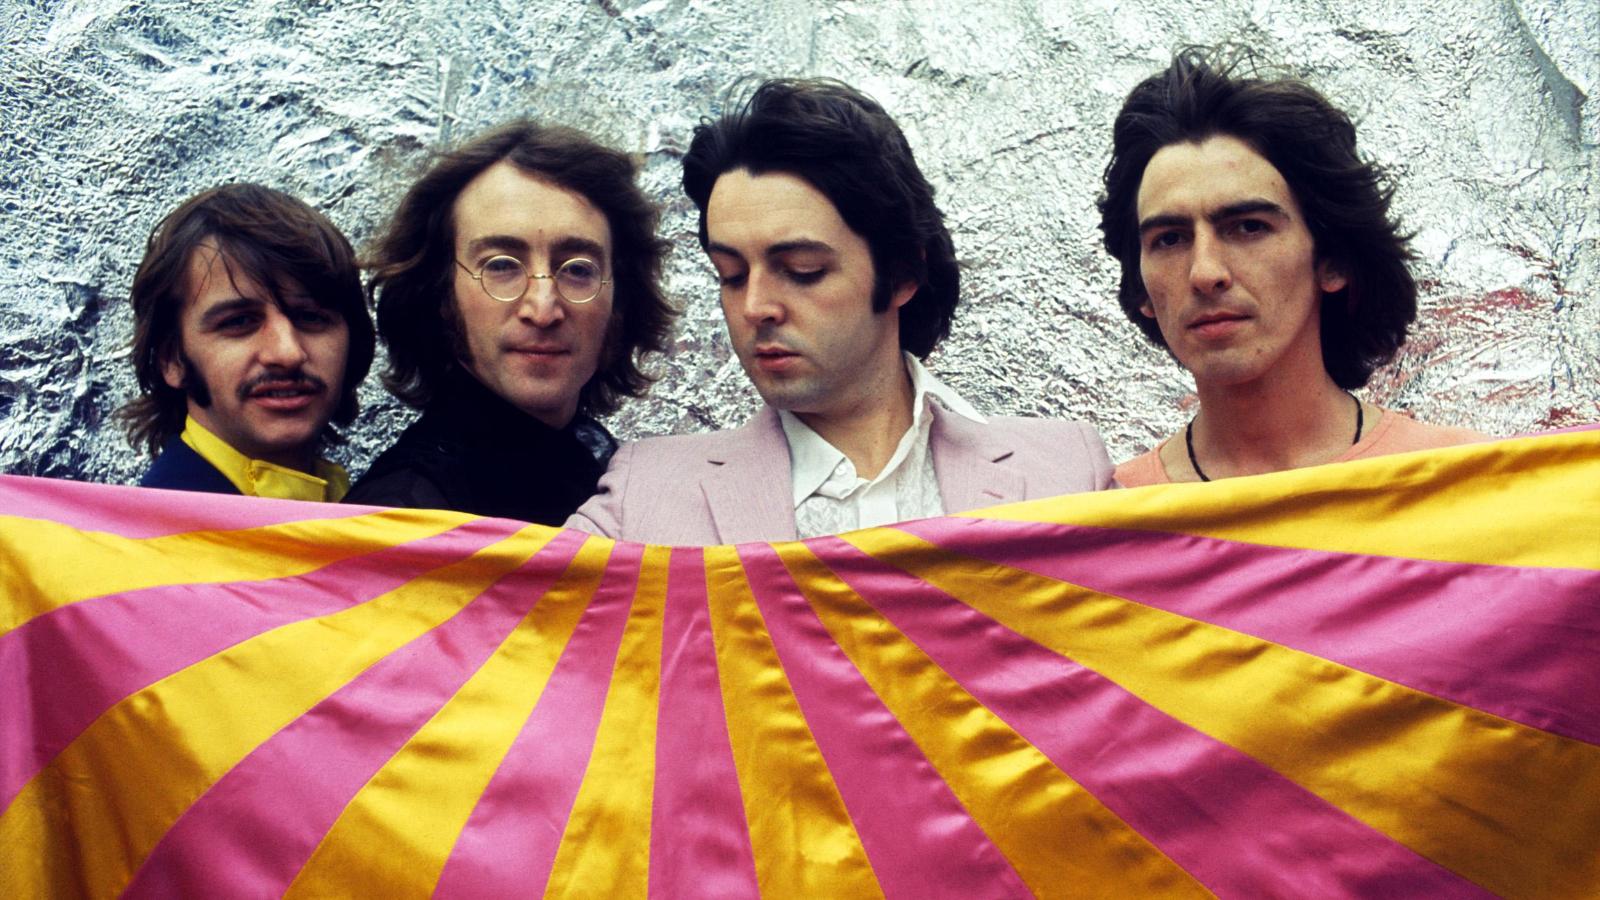 the, Beatles, John, Lennon, George, Harrison, Ringo, Starr, Paul, Mccartney Wallpaper